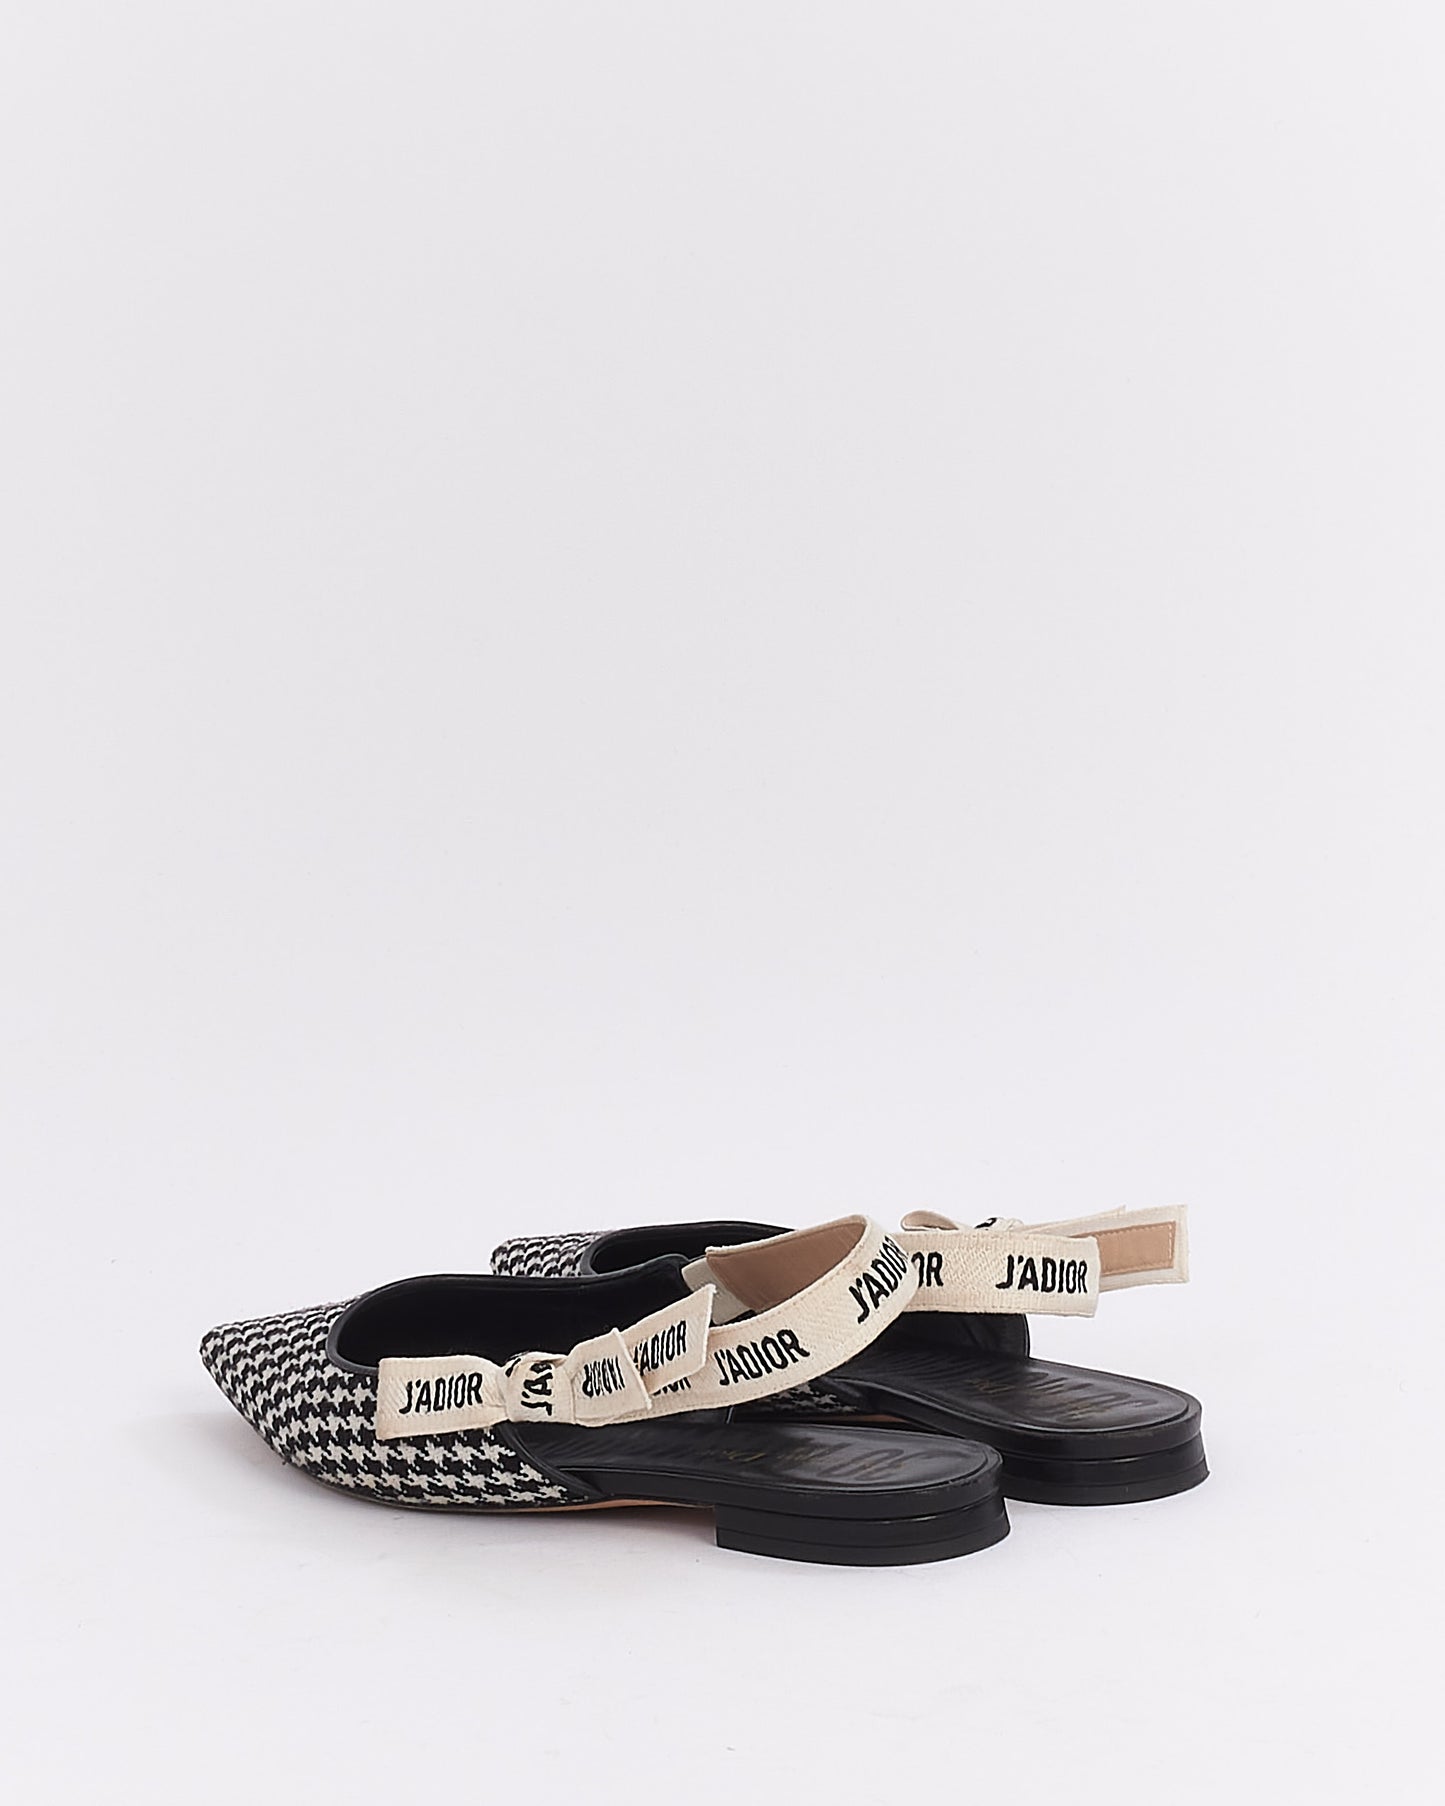 Chaussures plates à bride arrière J'adior en laine pied-de-poule noir et blanc Dior - 39,5